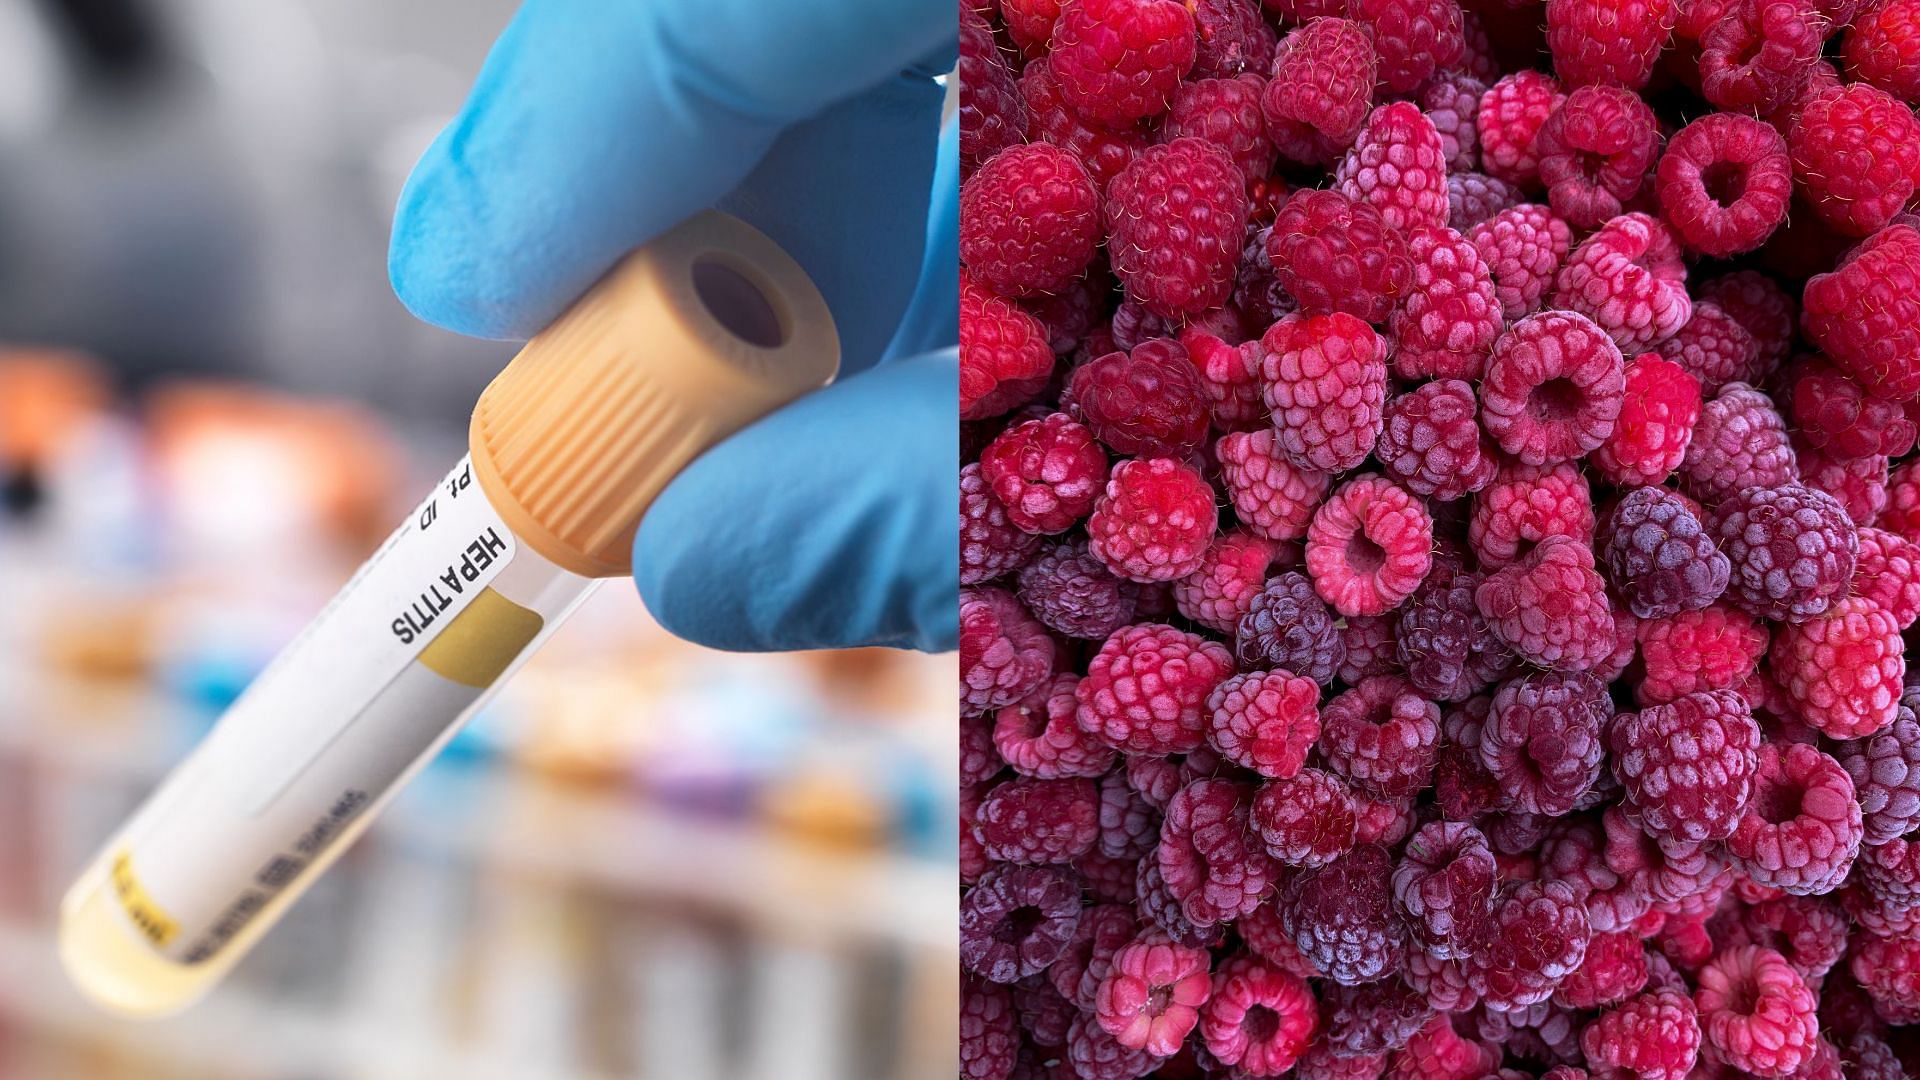 recall of James Farms frozen raspberries over Hepatitis concerns (Image via GettyImages)